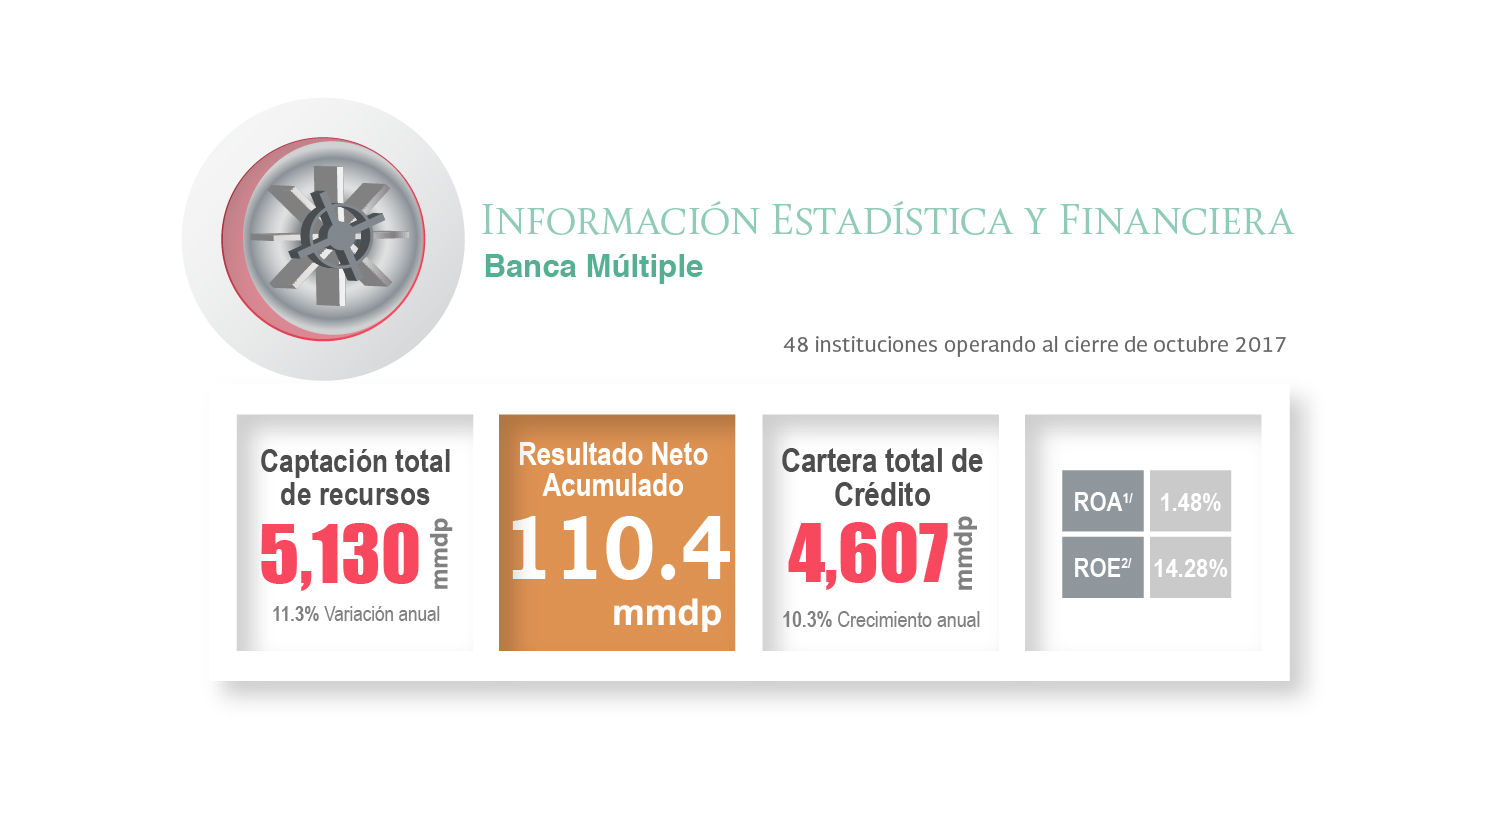 Información estadística del sector de Banca Múltiple al mes de octubre de 2017